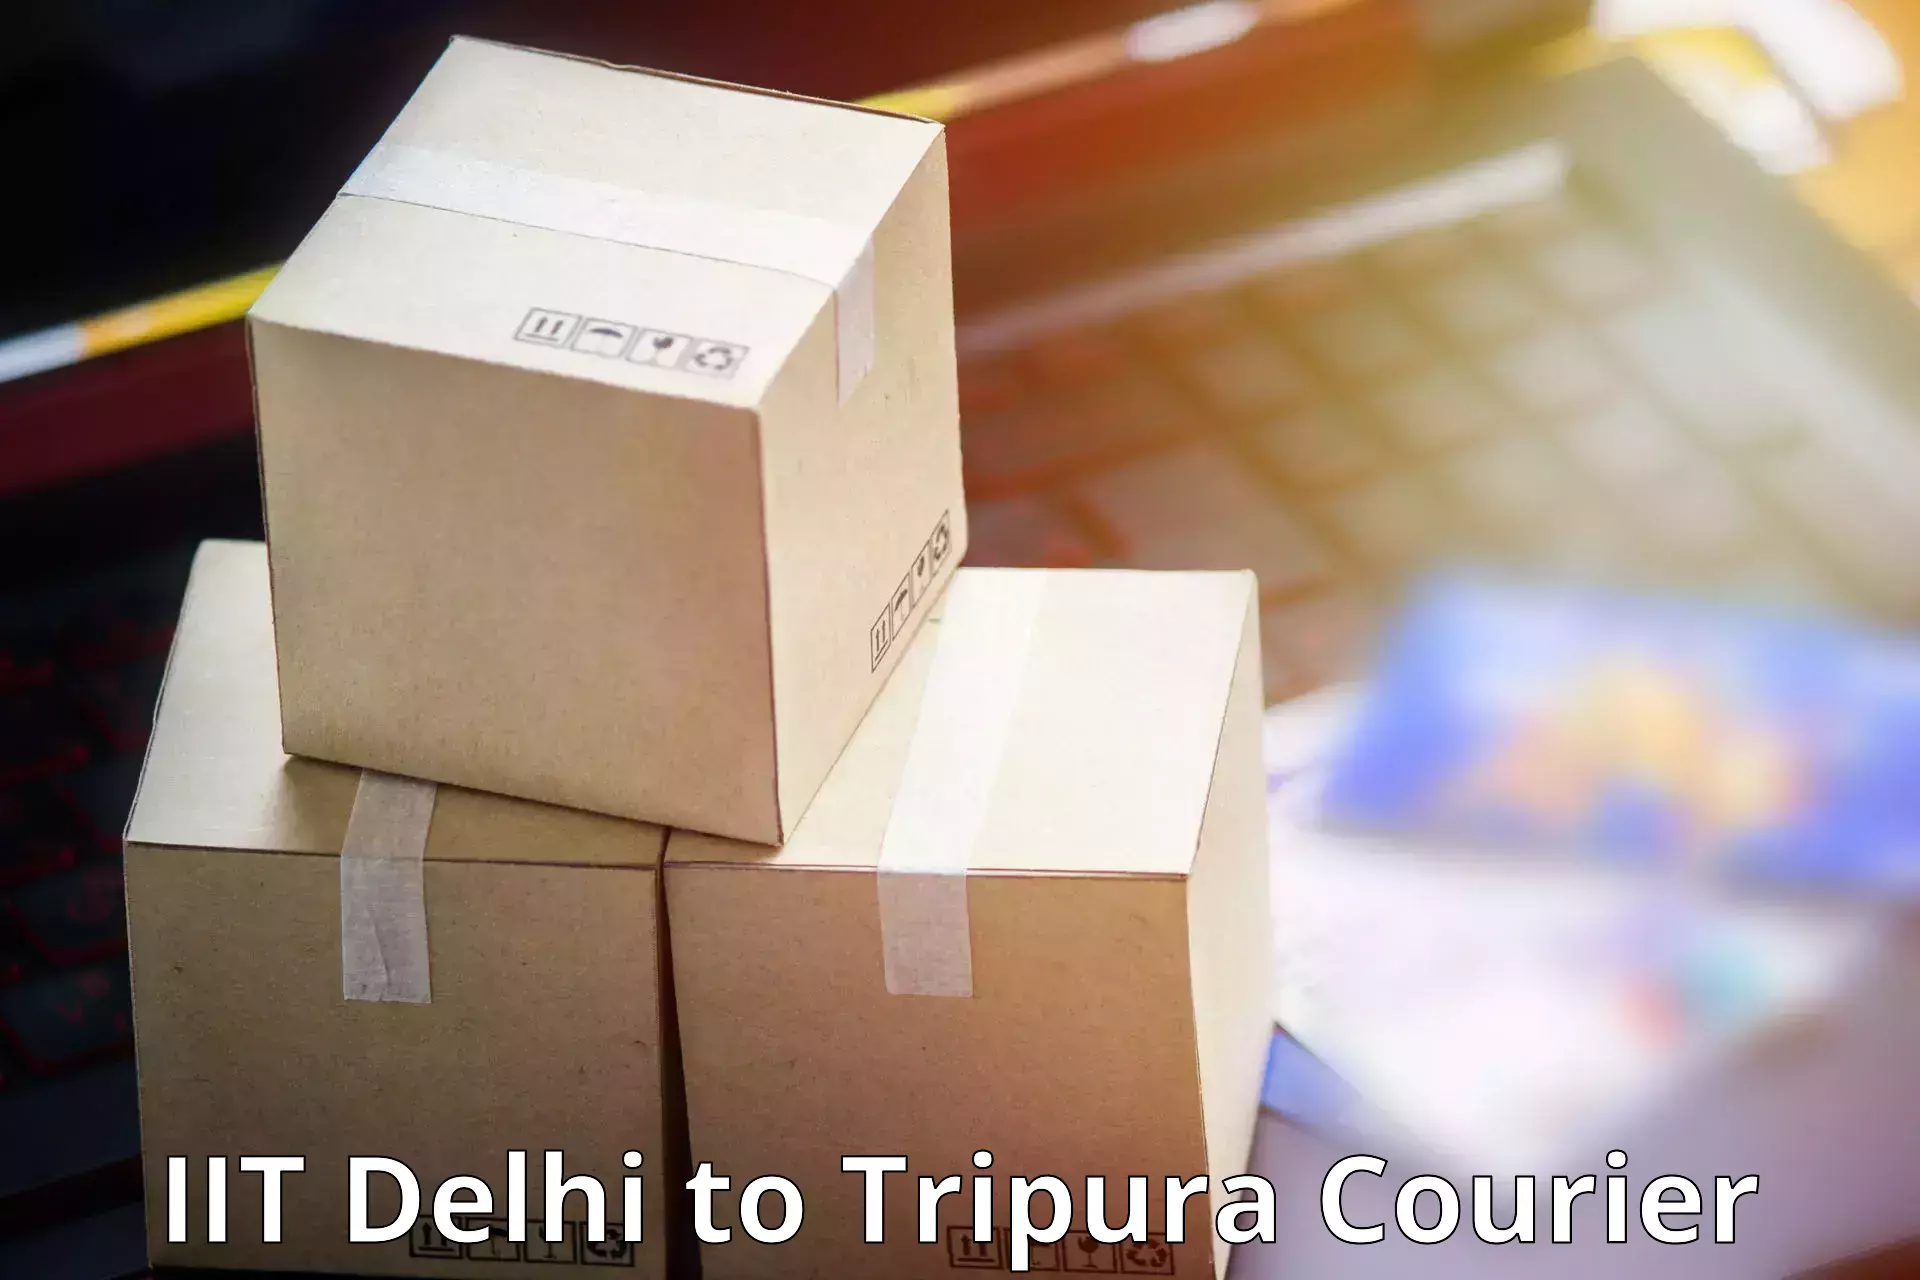 Local delivery service IIT Delhi to North Tripura